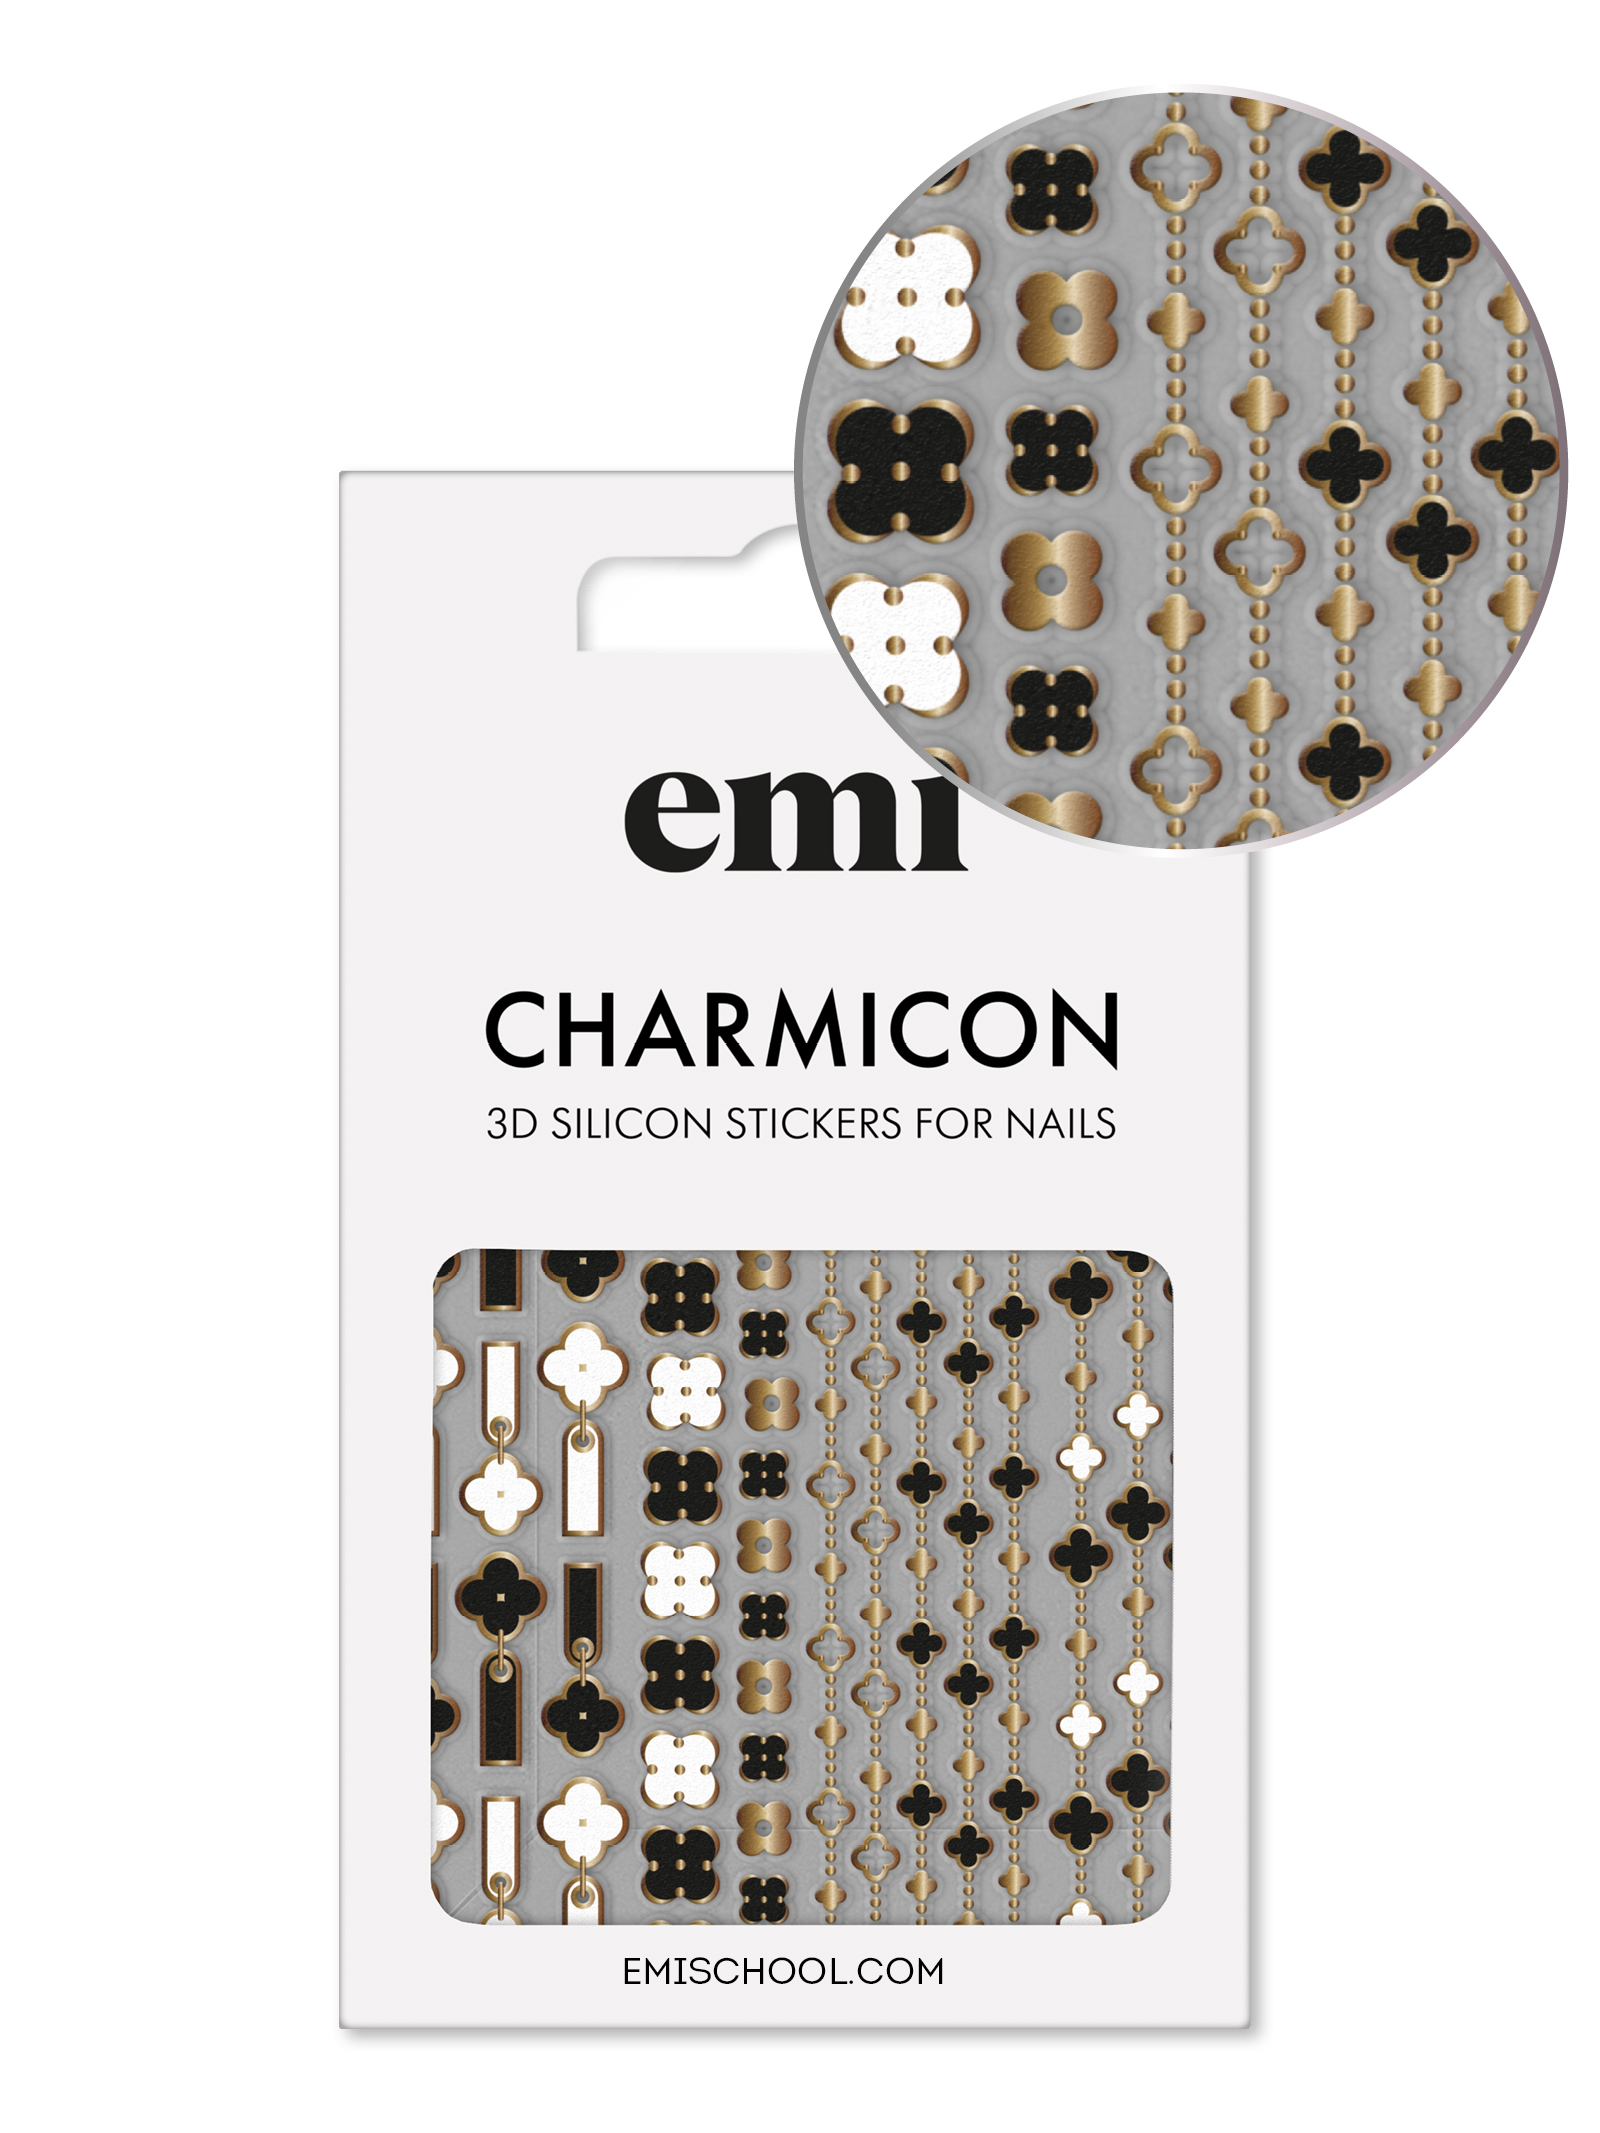 Charmicon 3D Silicone Stickers #185 Quatrefoil